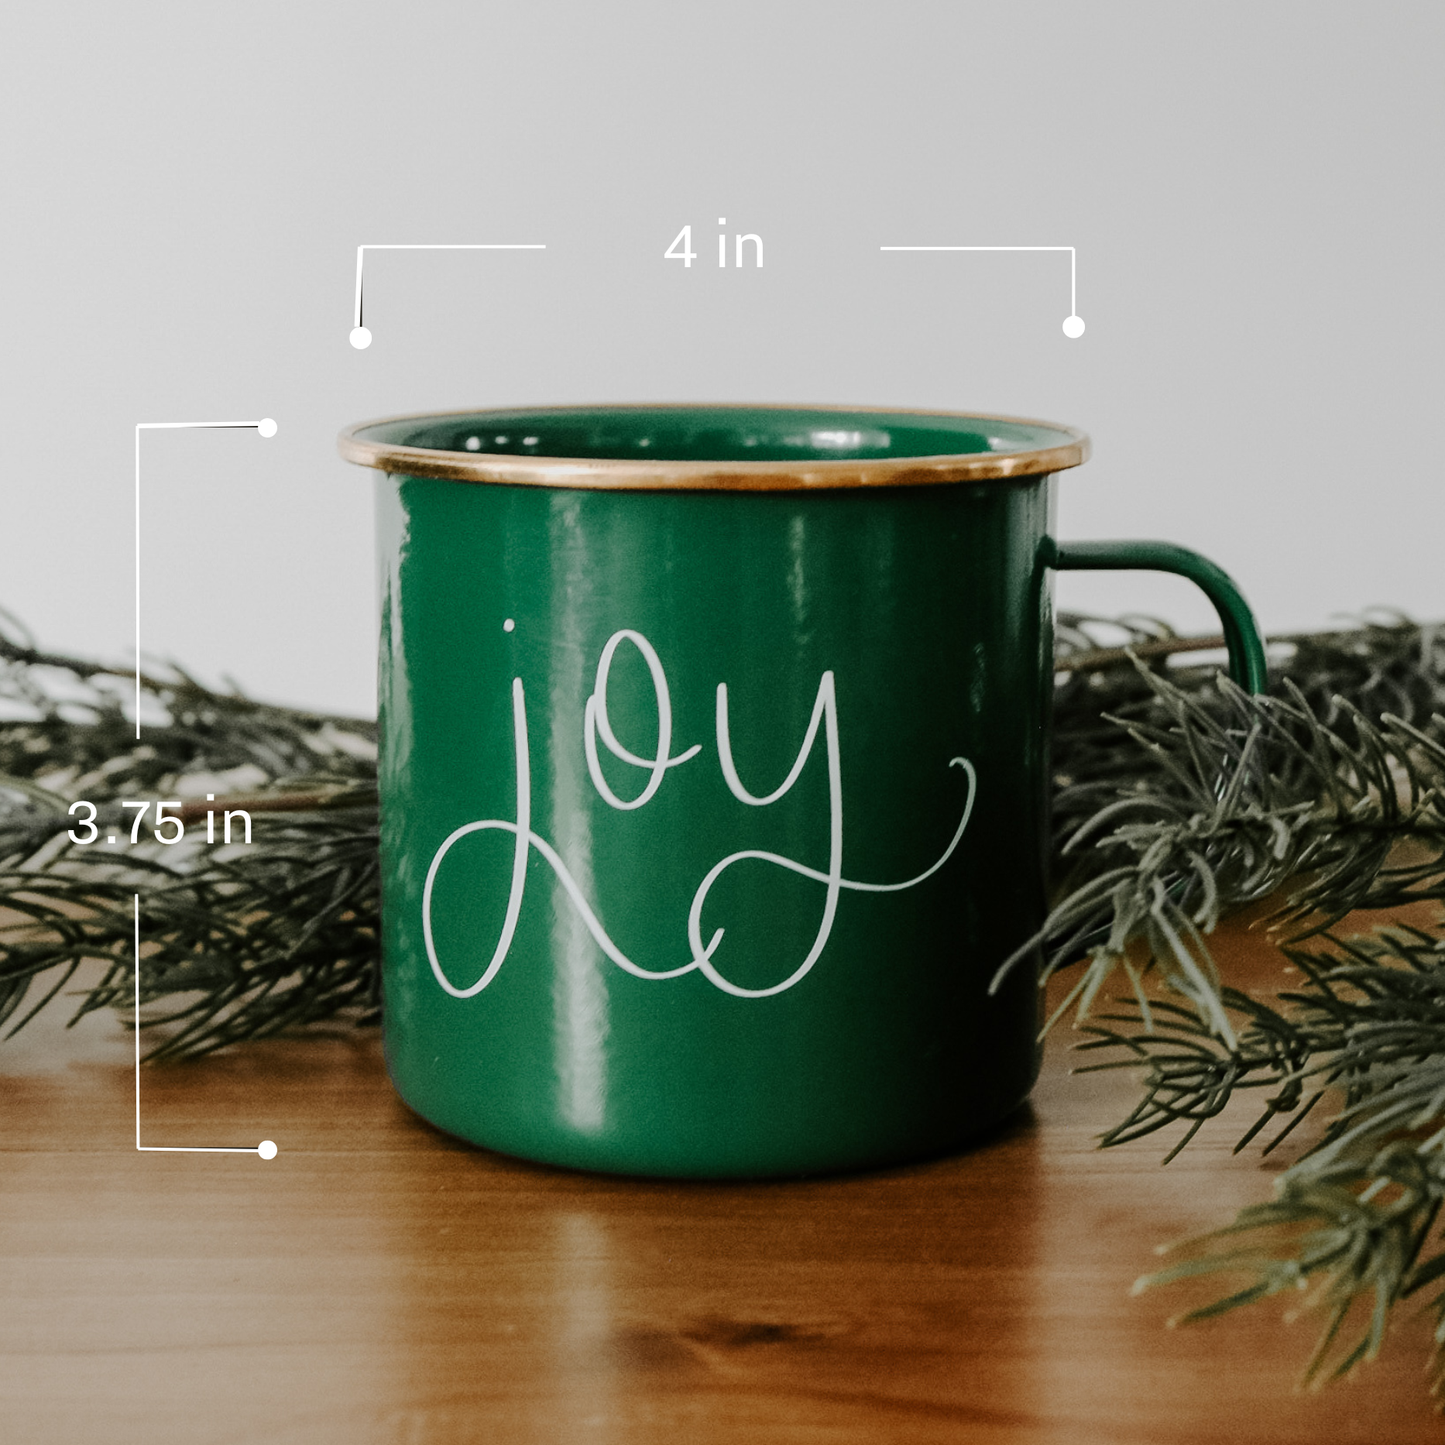 Merry Coffee Mug - Christmas Home Decor & Gifts